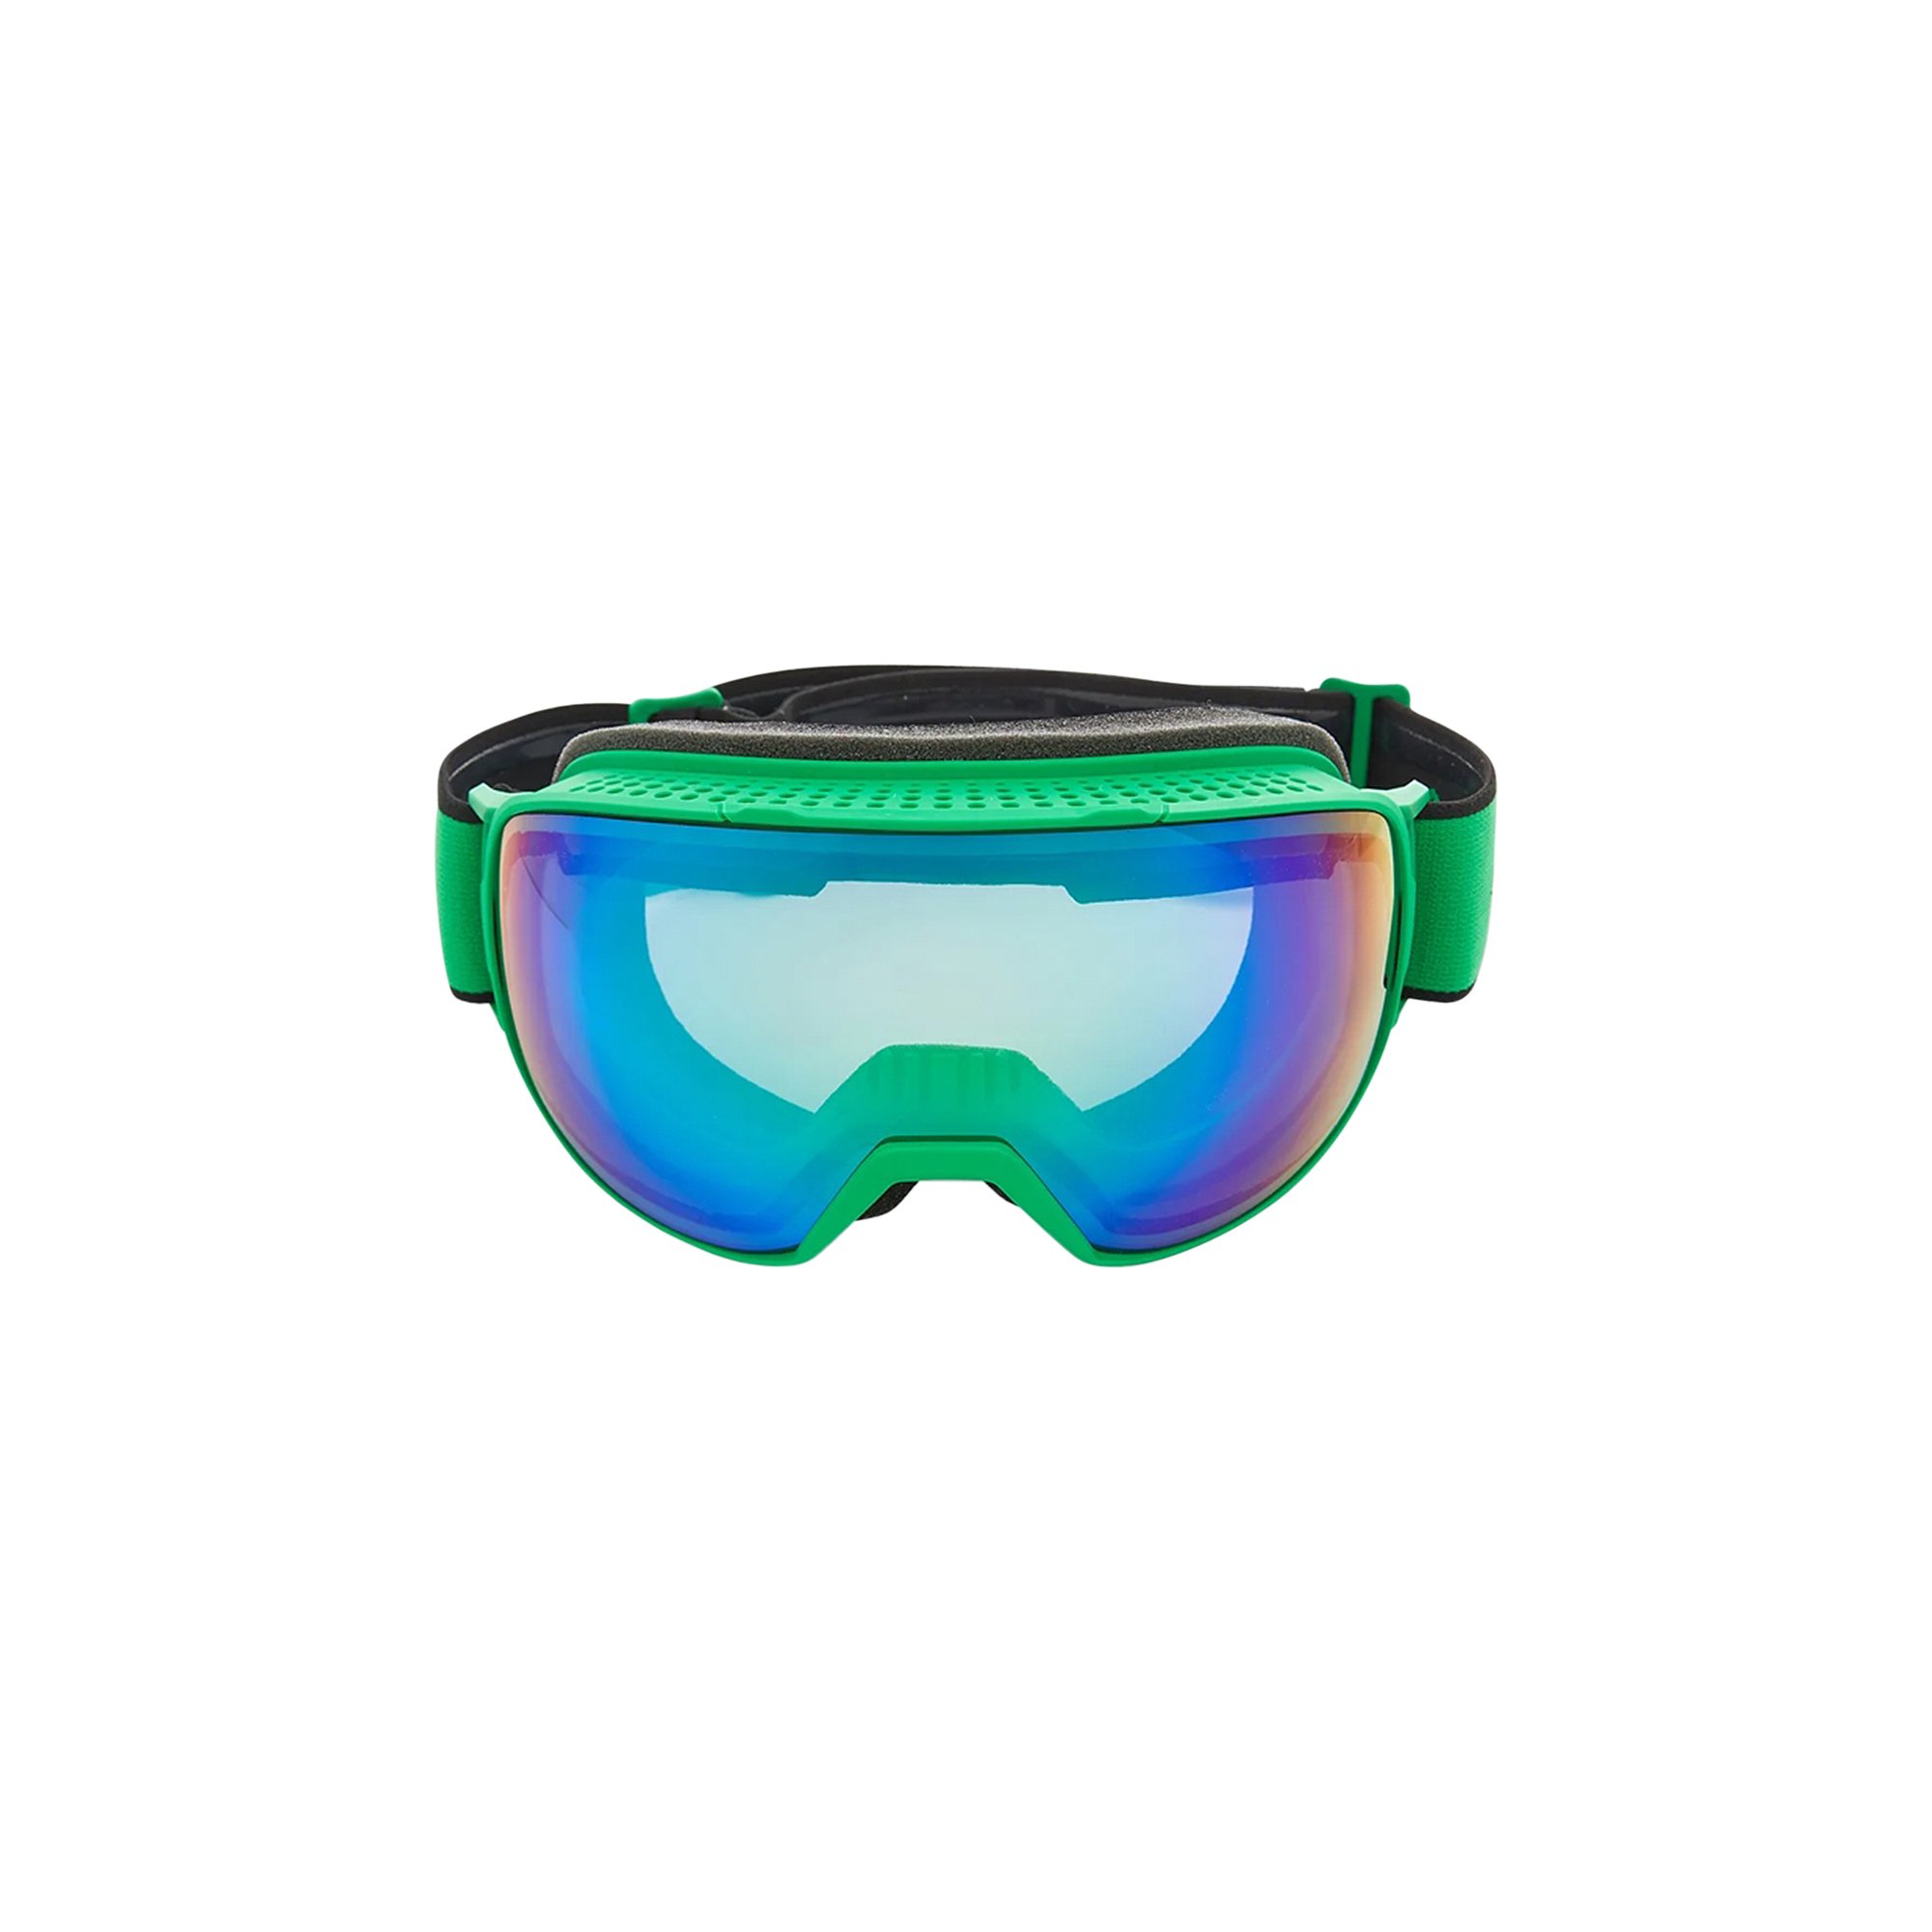 Лыжные очки Bottega Veneta, зеленые фотографии